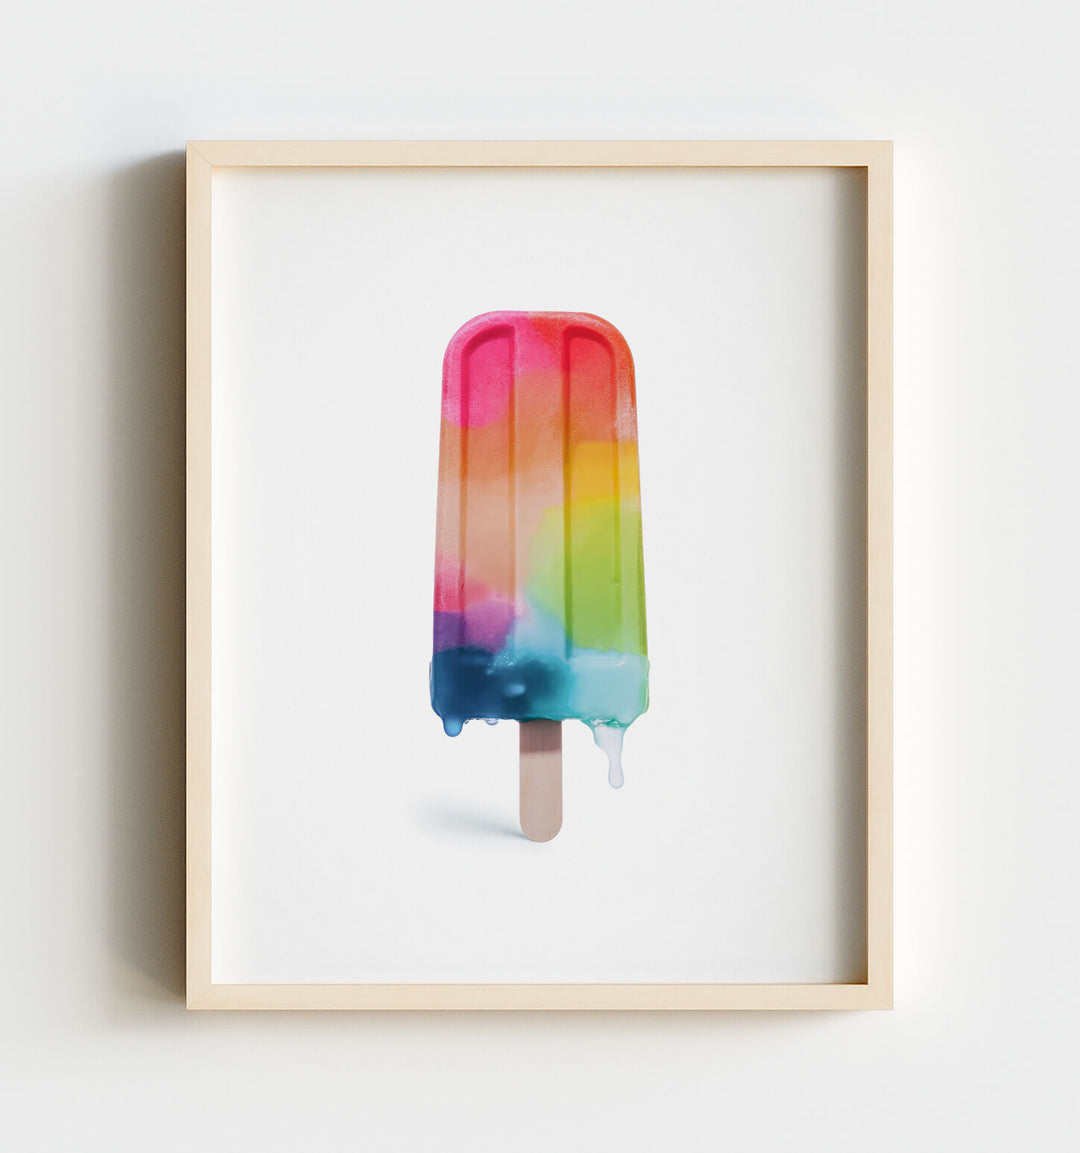 Rainbow Desserts Wall Art Prints